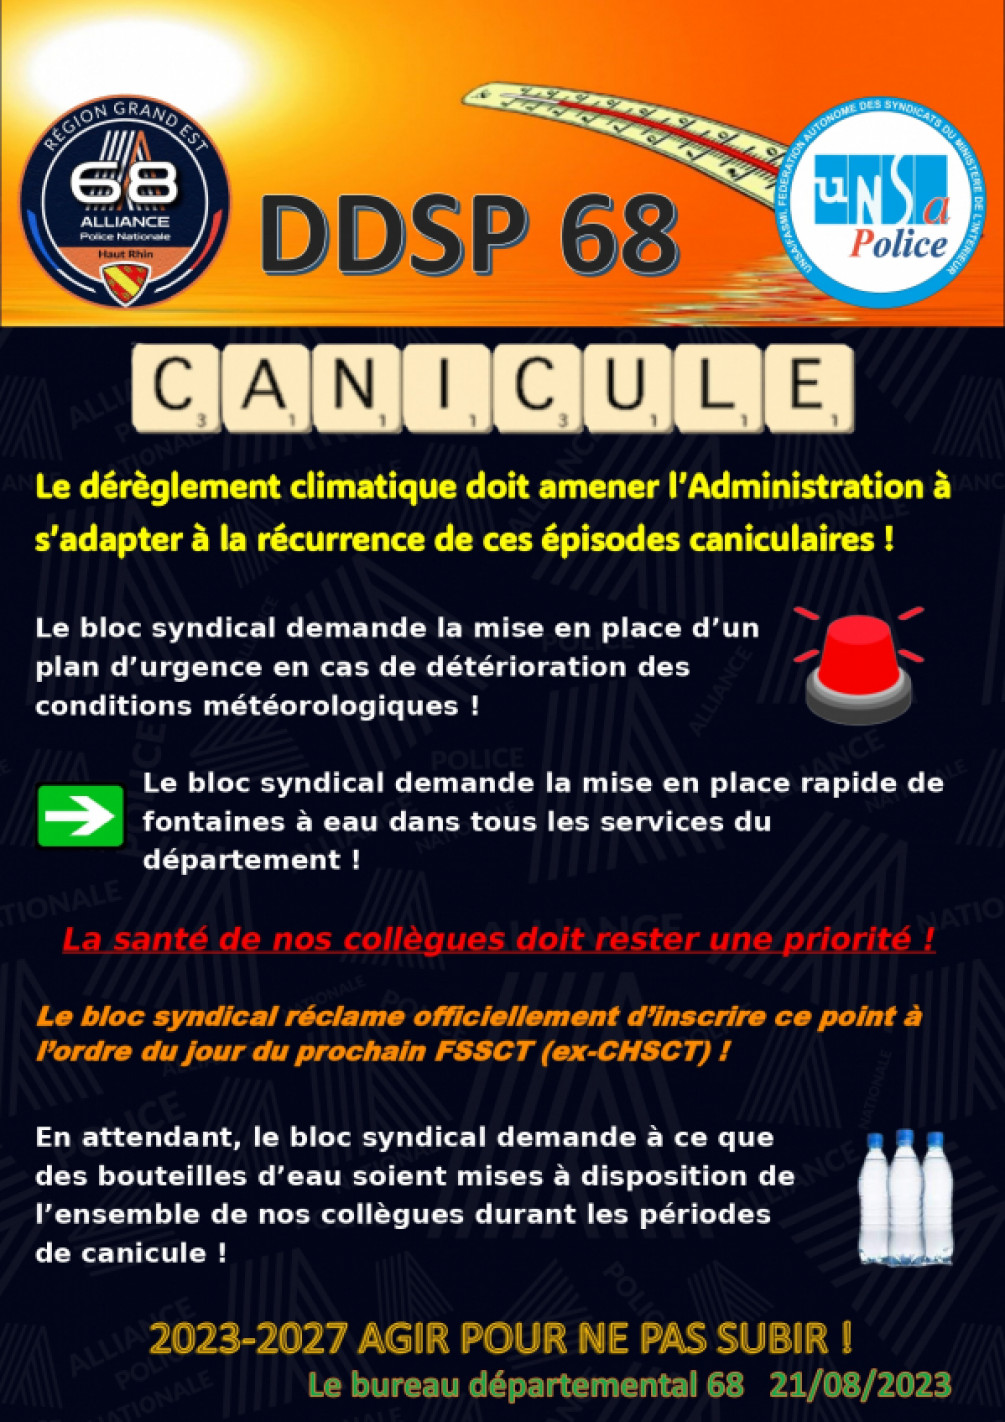 Canicule DDSP 68